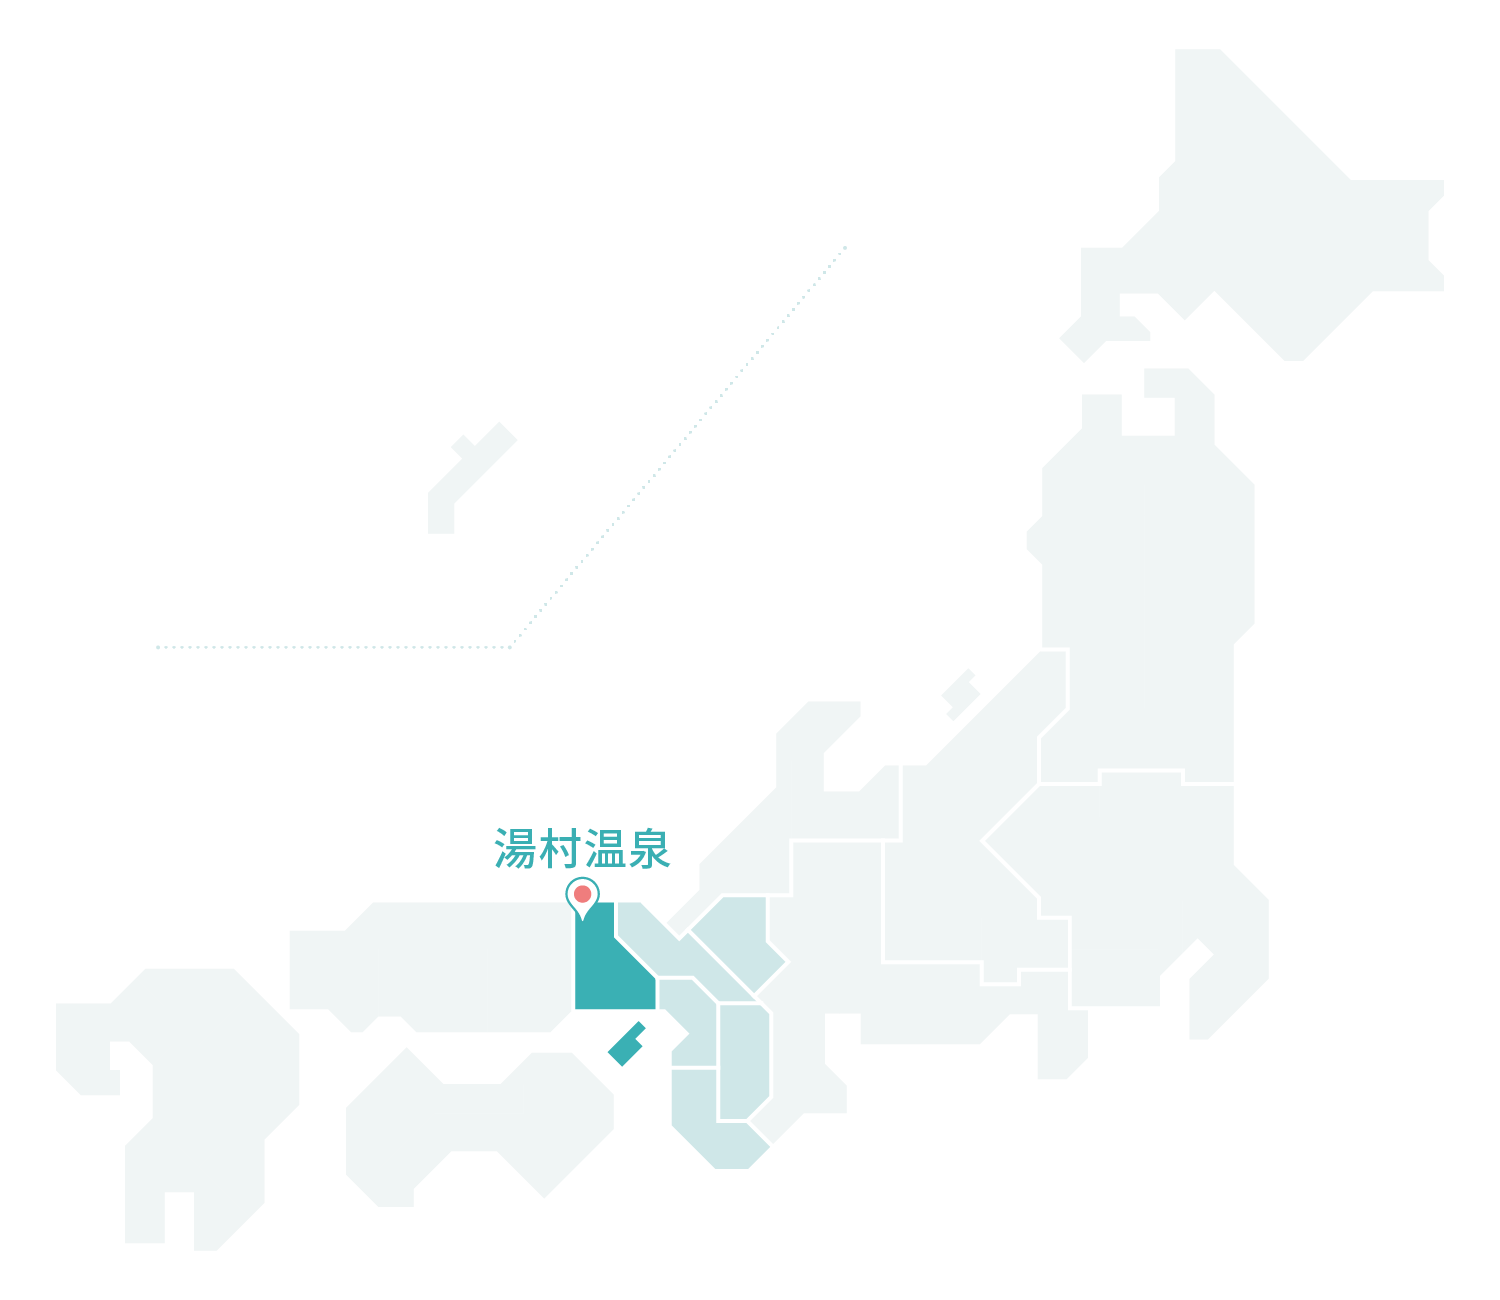 湯村温泉マップ